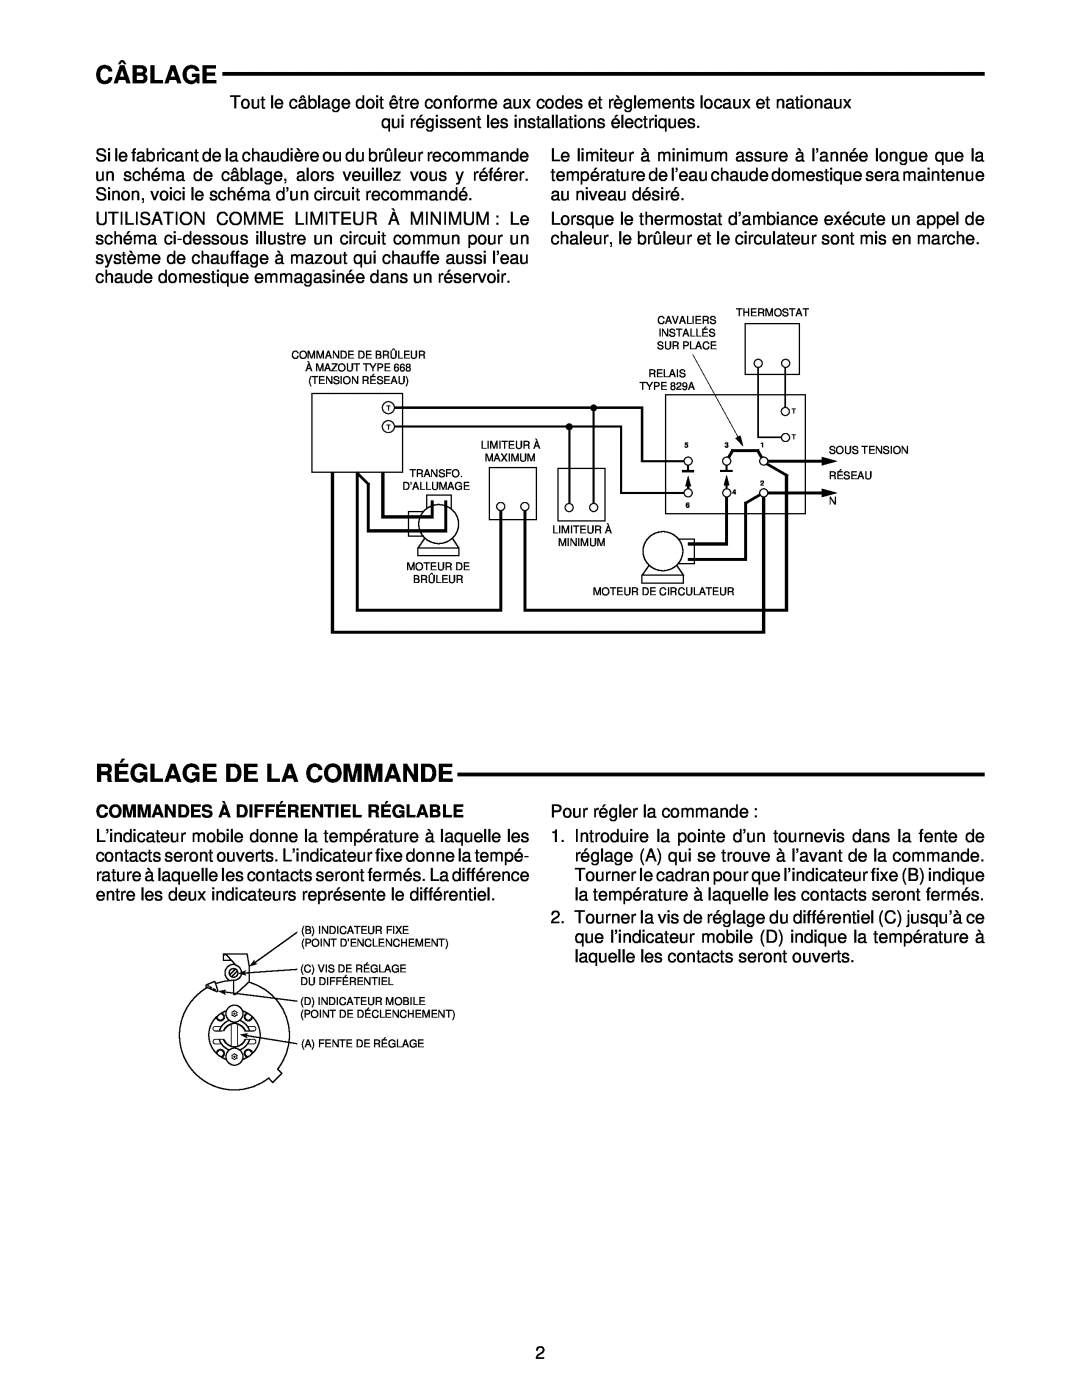 White Rodgers 1145 installation instructions Câblage, Réglage De La Commande, Commandes À Différentiel Réglable 